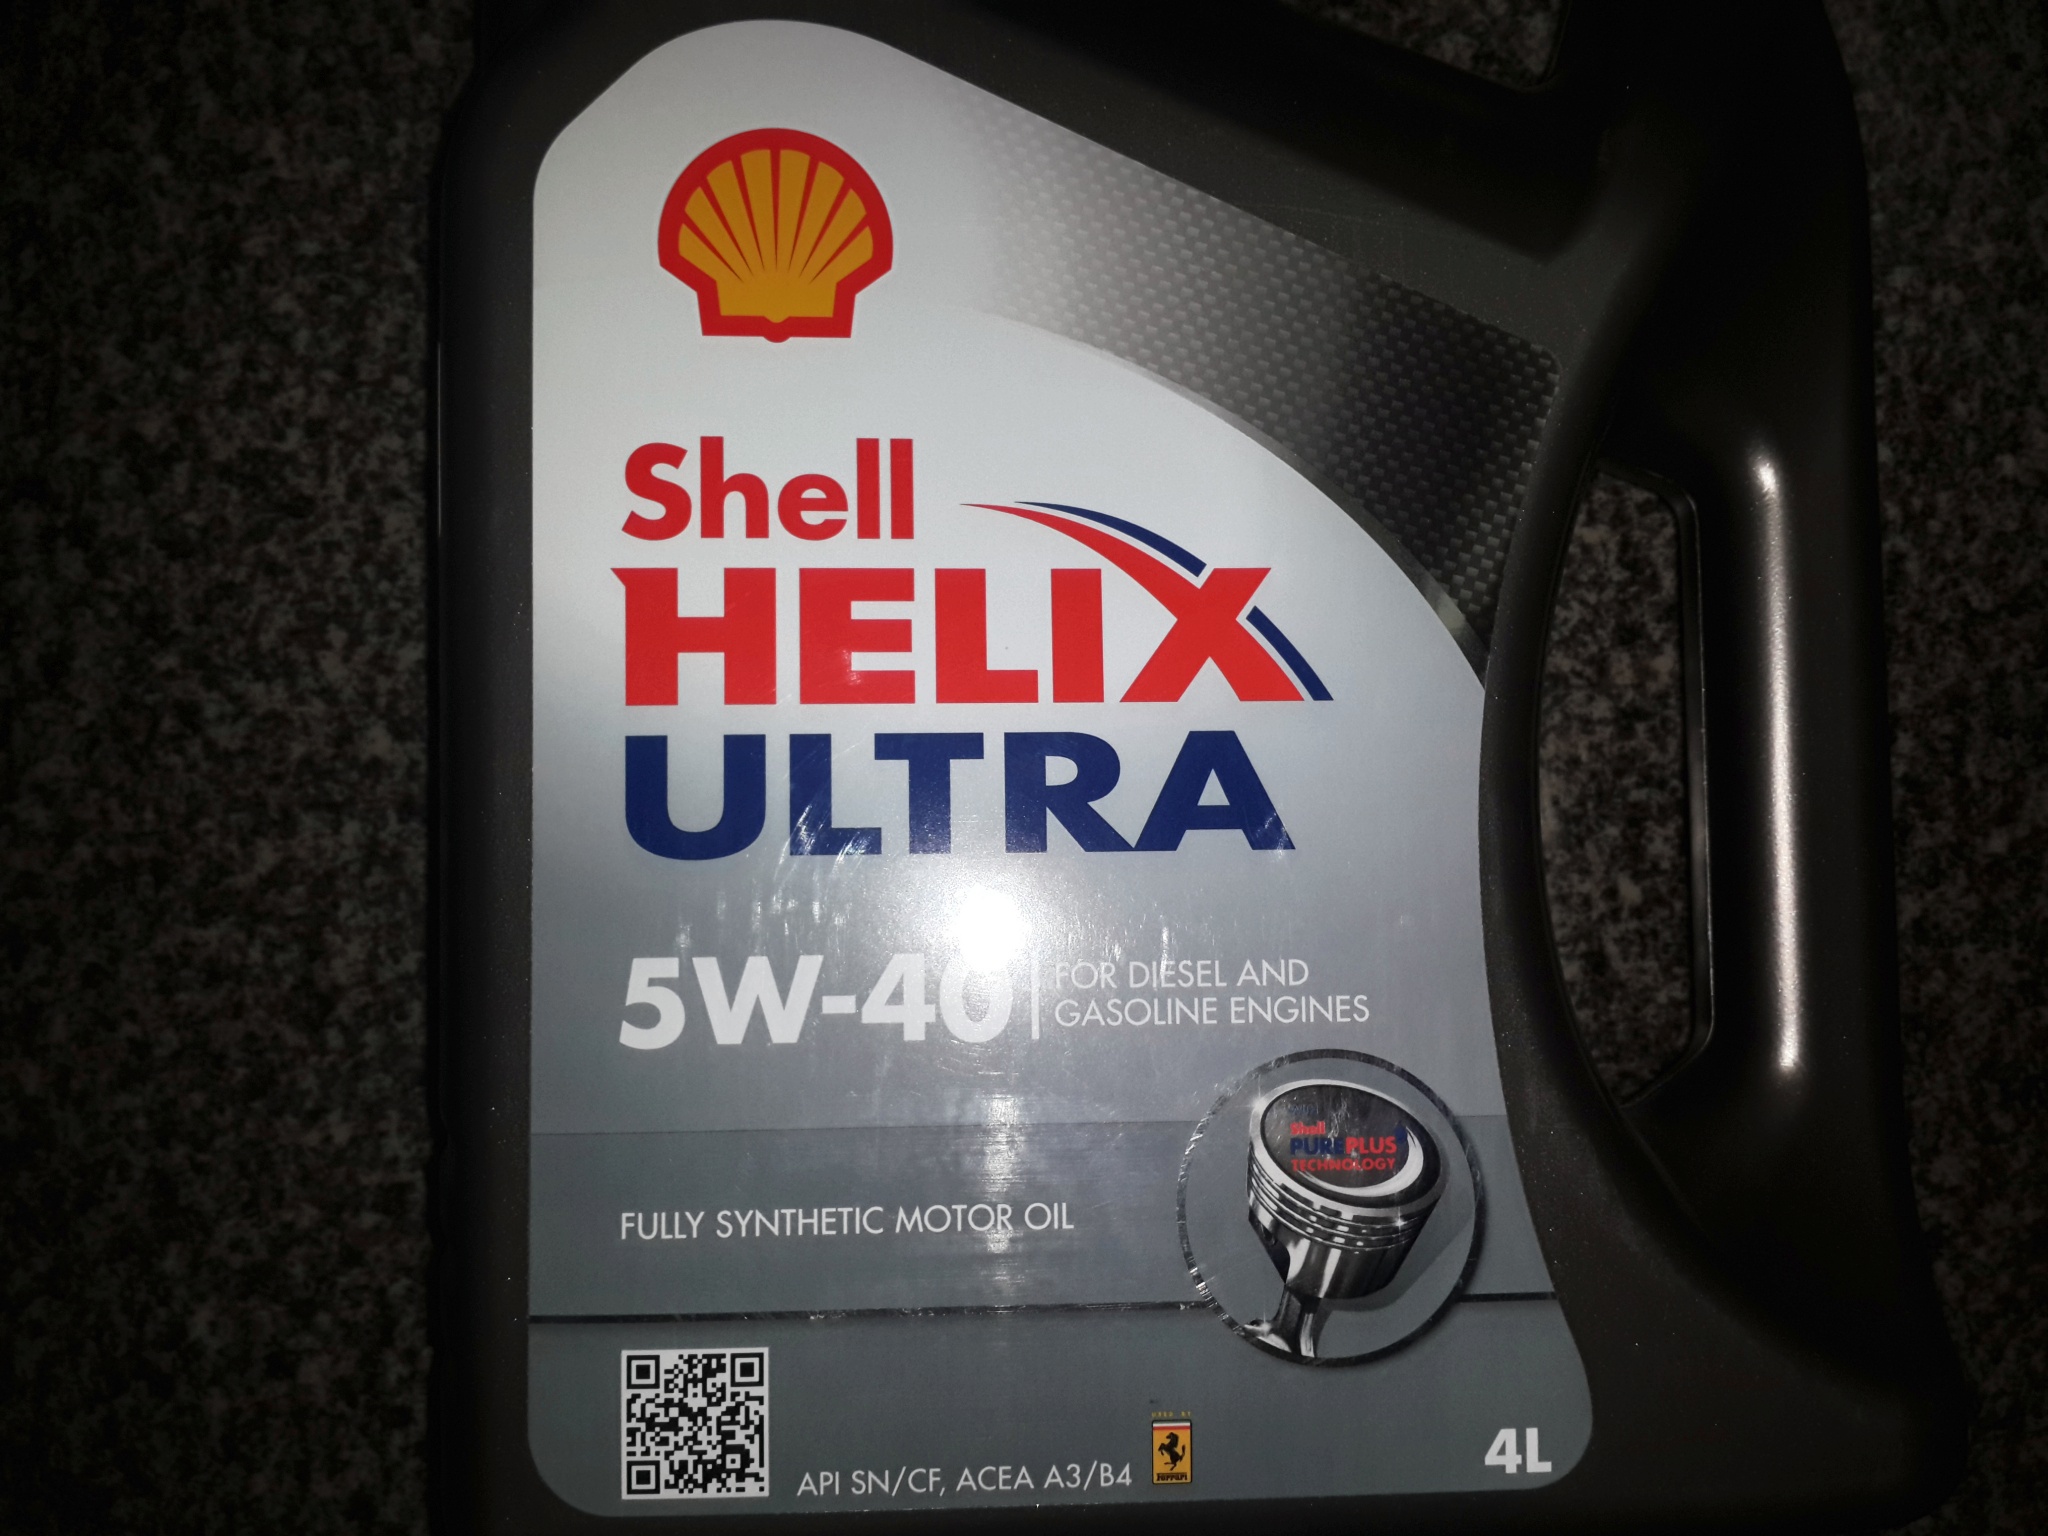 Shell Helix Ultra 5w-40, 4 л. Масло моторное синтетическое Shell Helix Ultra 5w40 550040755 4 л. Моторное масло Shell Helix Ultra 5w-40 синтетическое 4 л. 550040755 Shell масло Shell Helix Ultra 5w40 мот. Син. (4л). Оригинал масла шелл